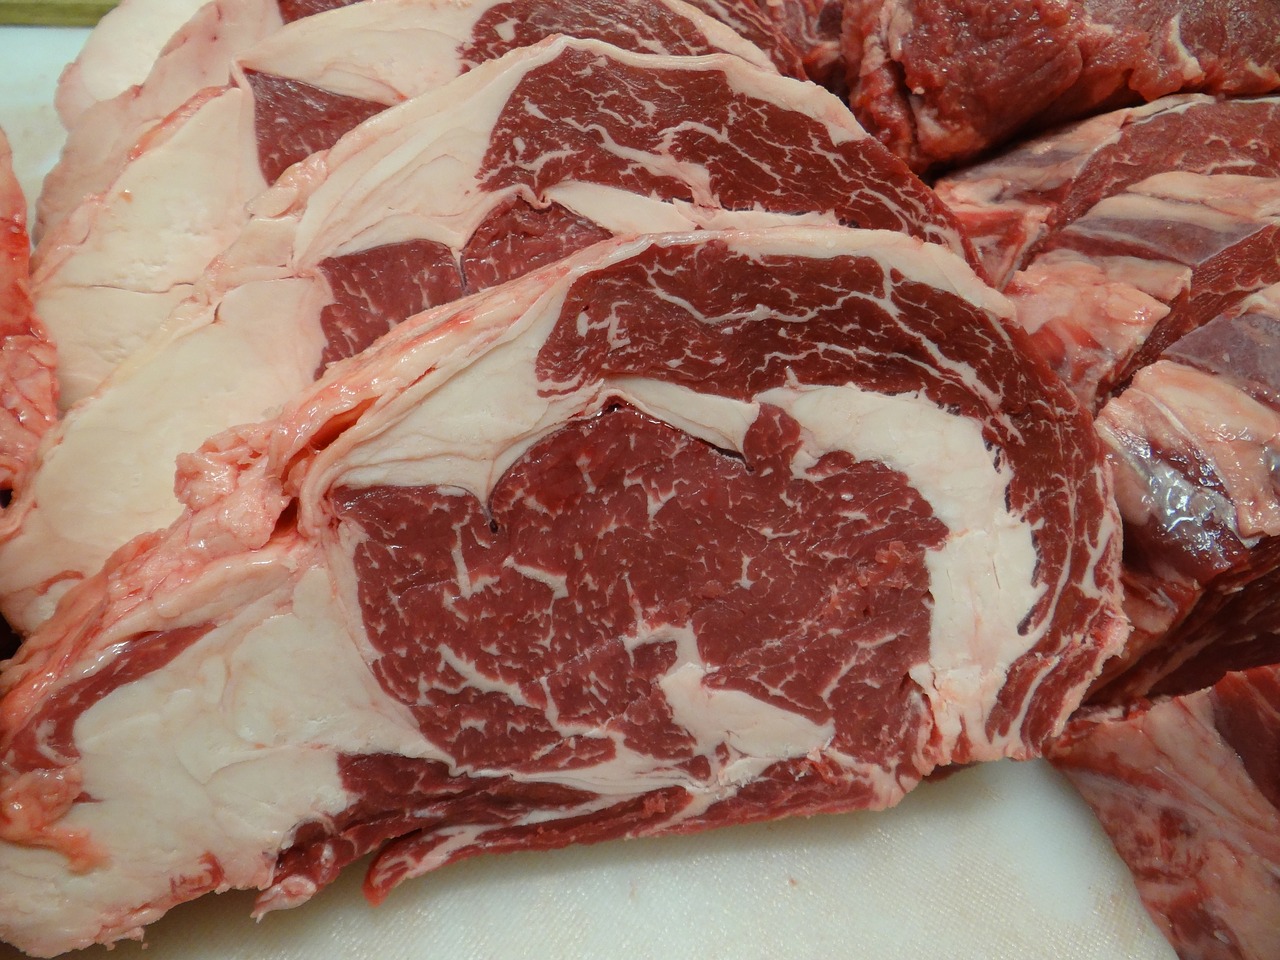 Polònia va exportar carn de boví contaminada a Espanya i a països de la UE